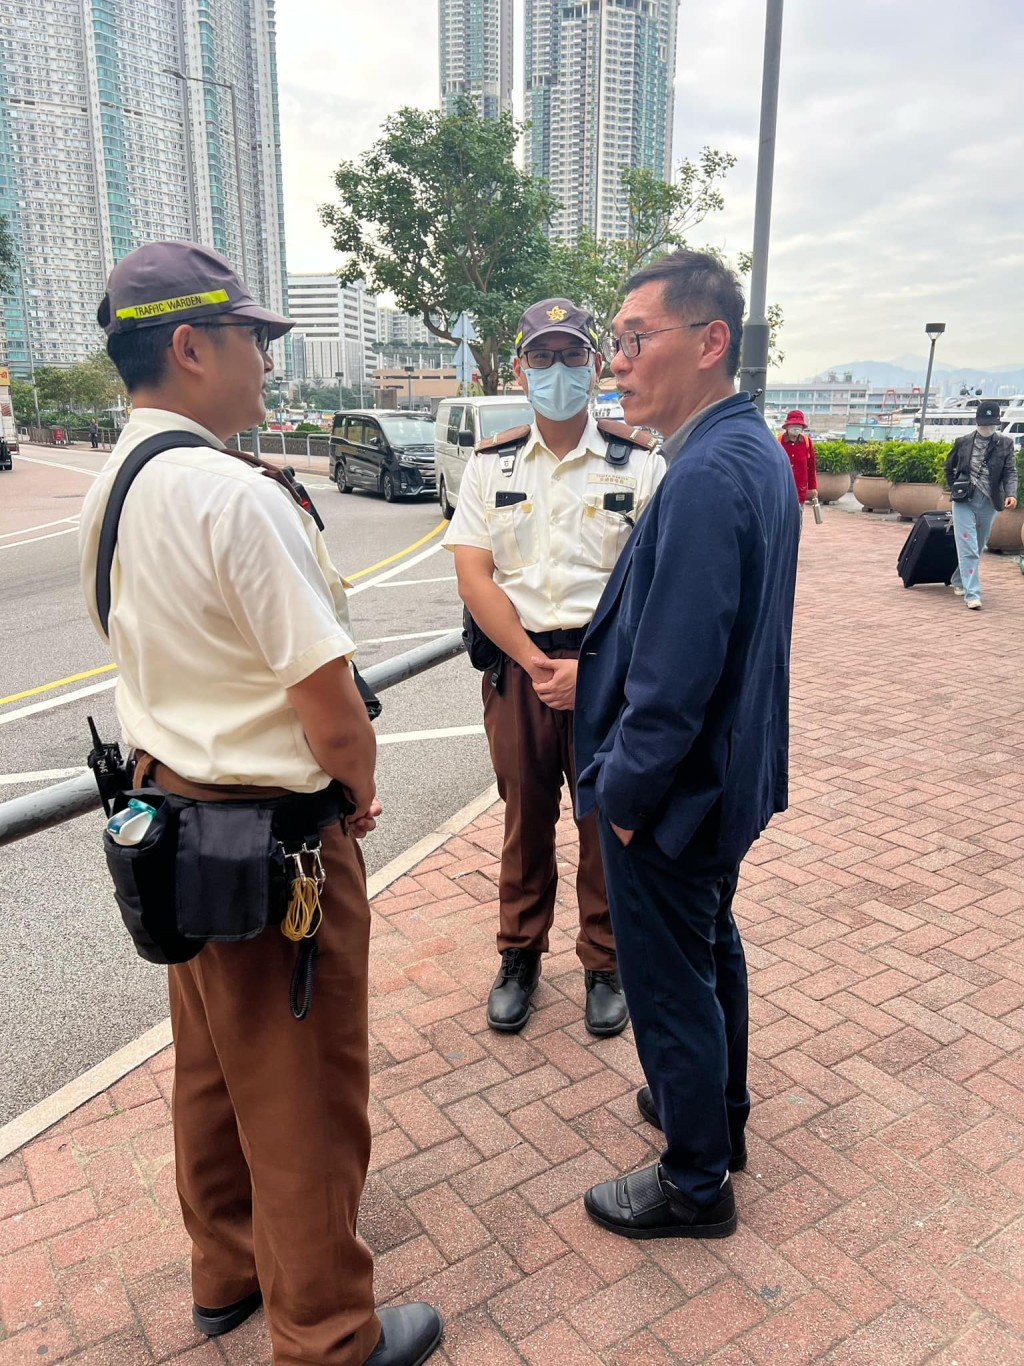 警務處處長副處長（管理）陳俊燊（右）與交通督導員聊天。香港警察fb